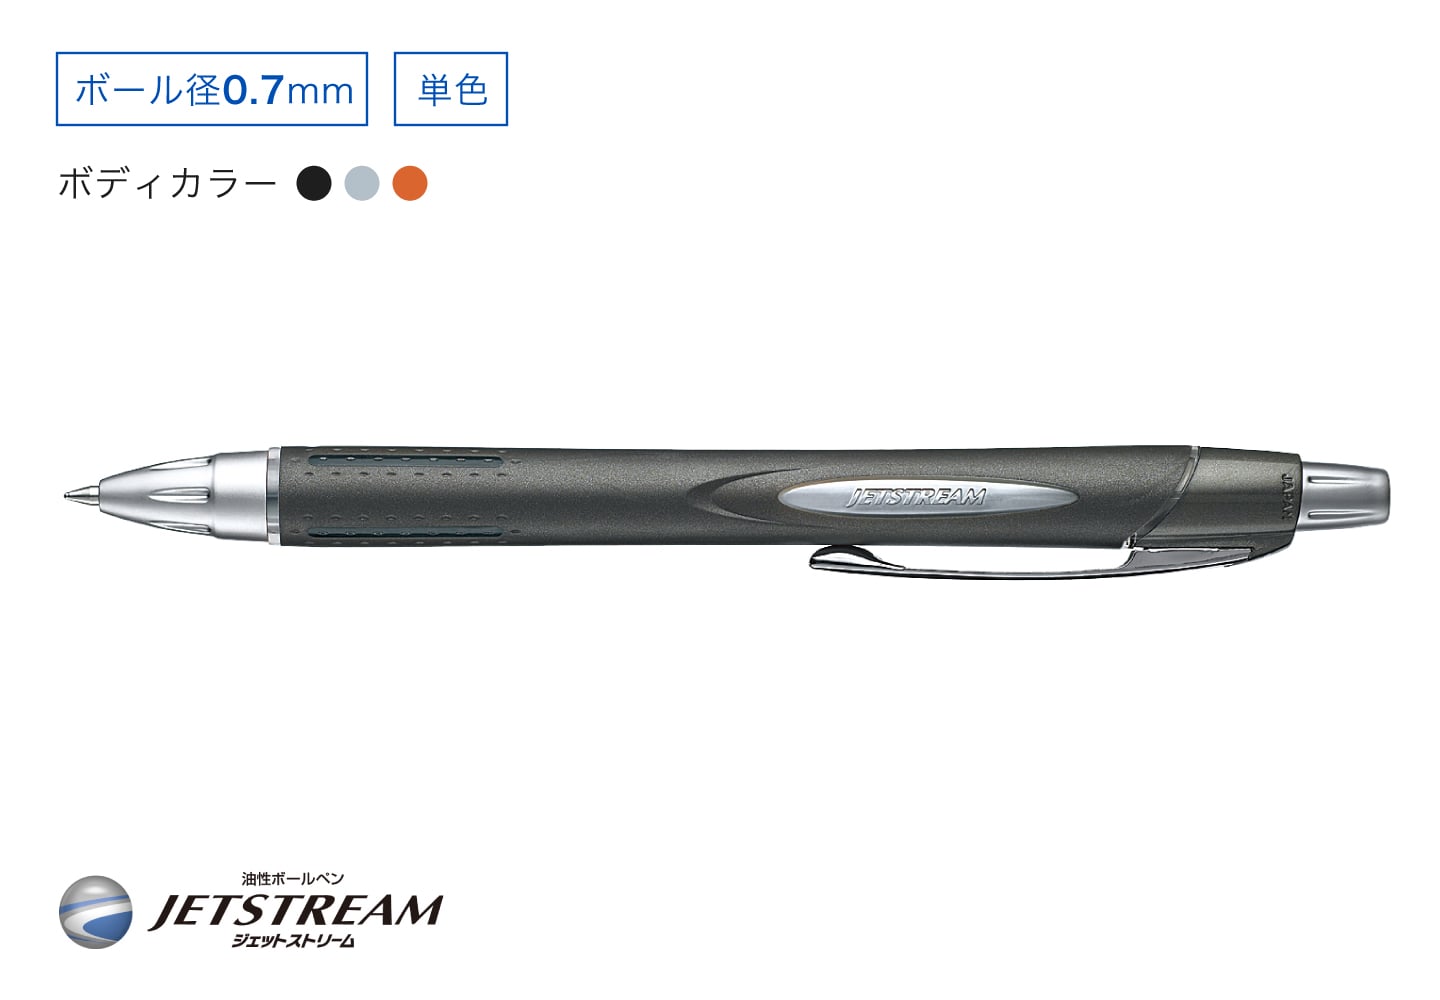 JETSTREAM 単色ボールペン ラバーボディ ボール径0.7mm